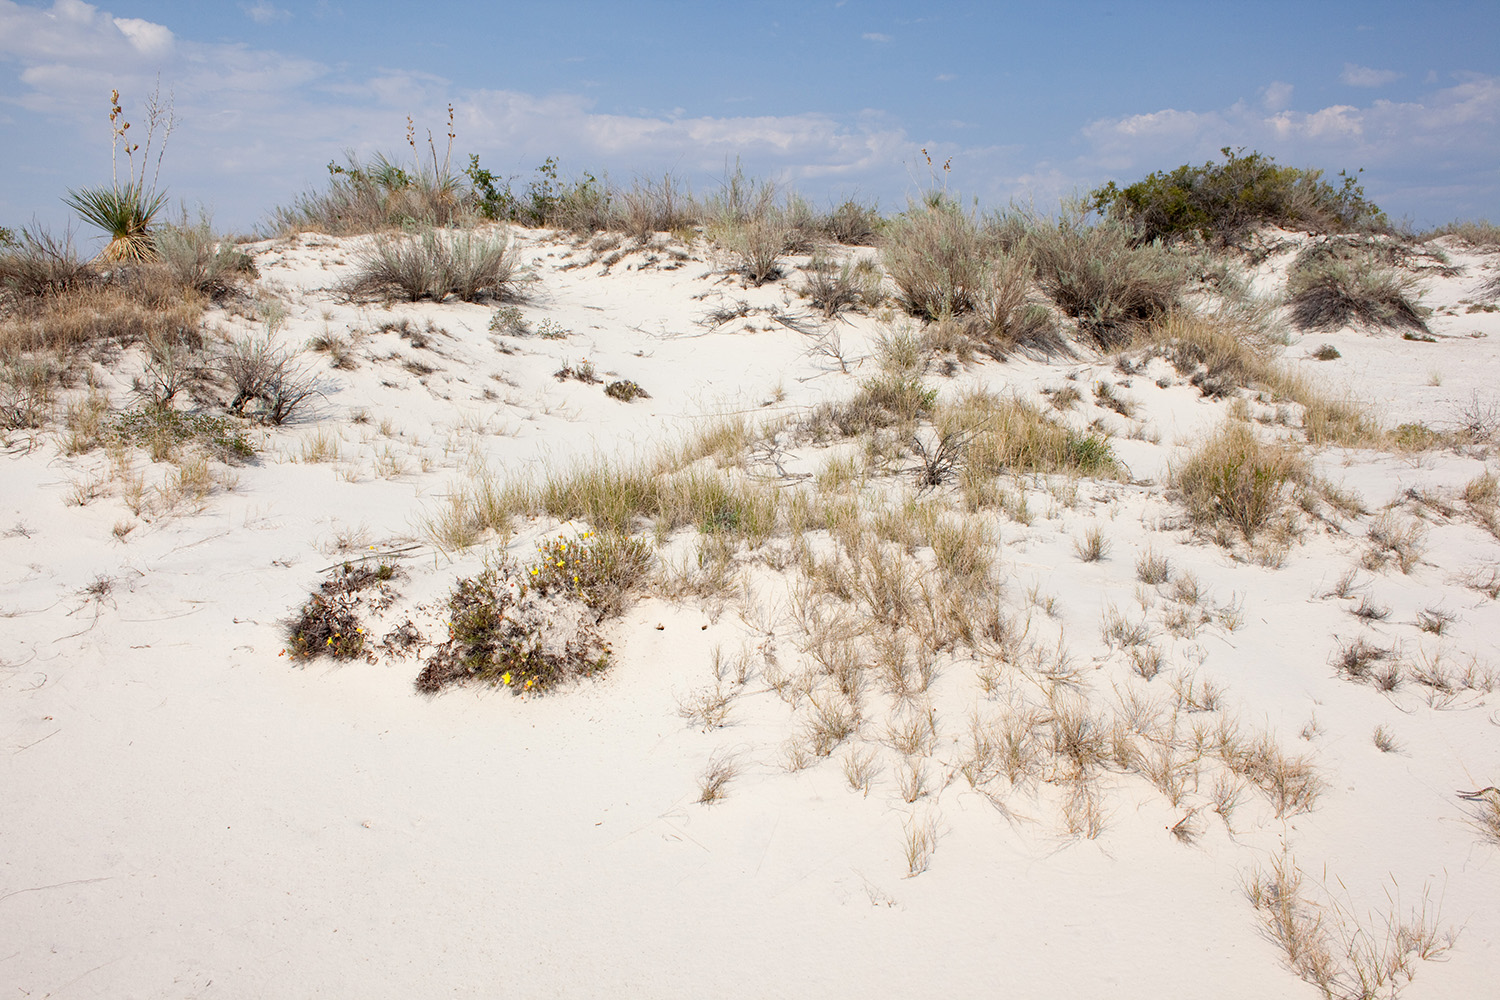 Growth habit in dune habitat